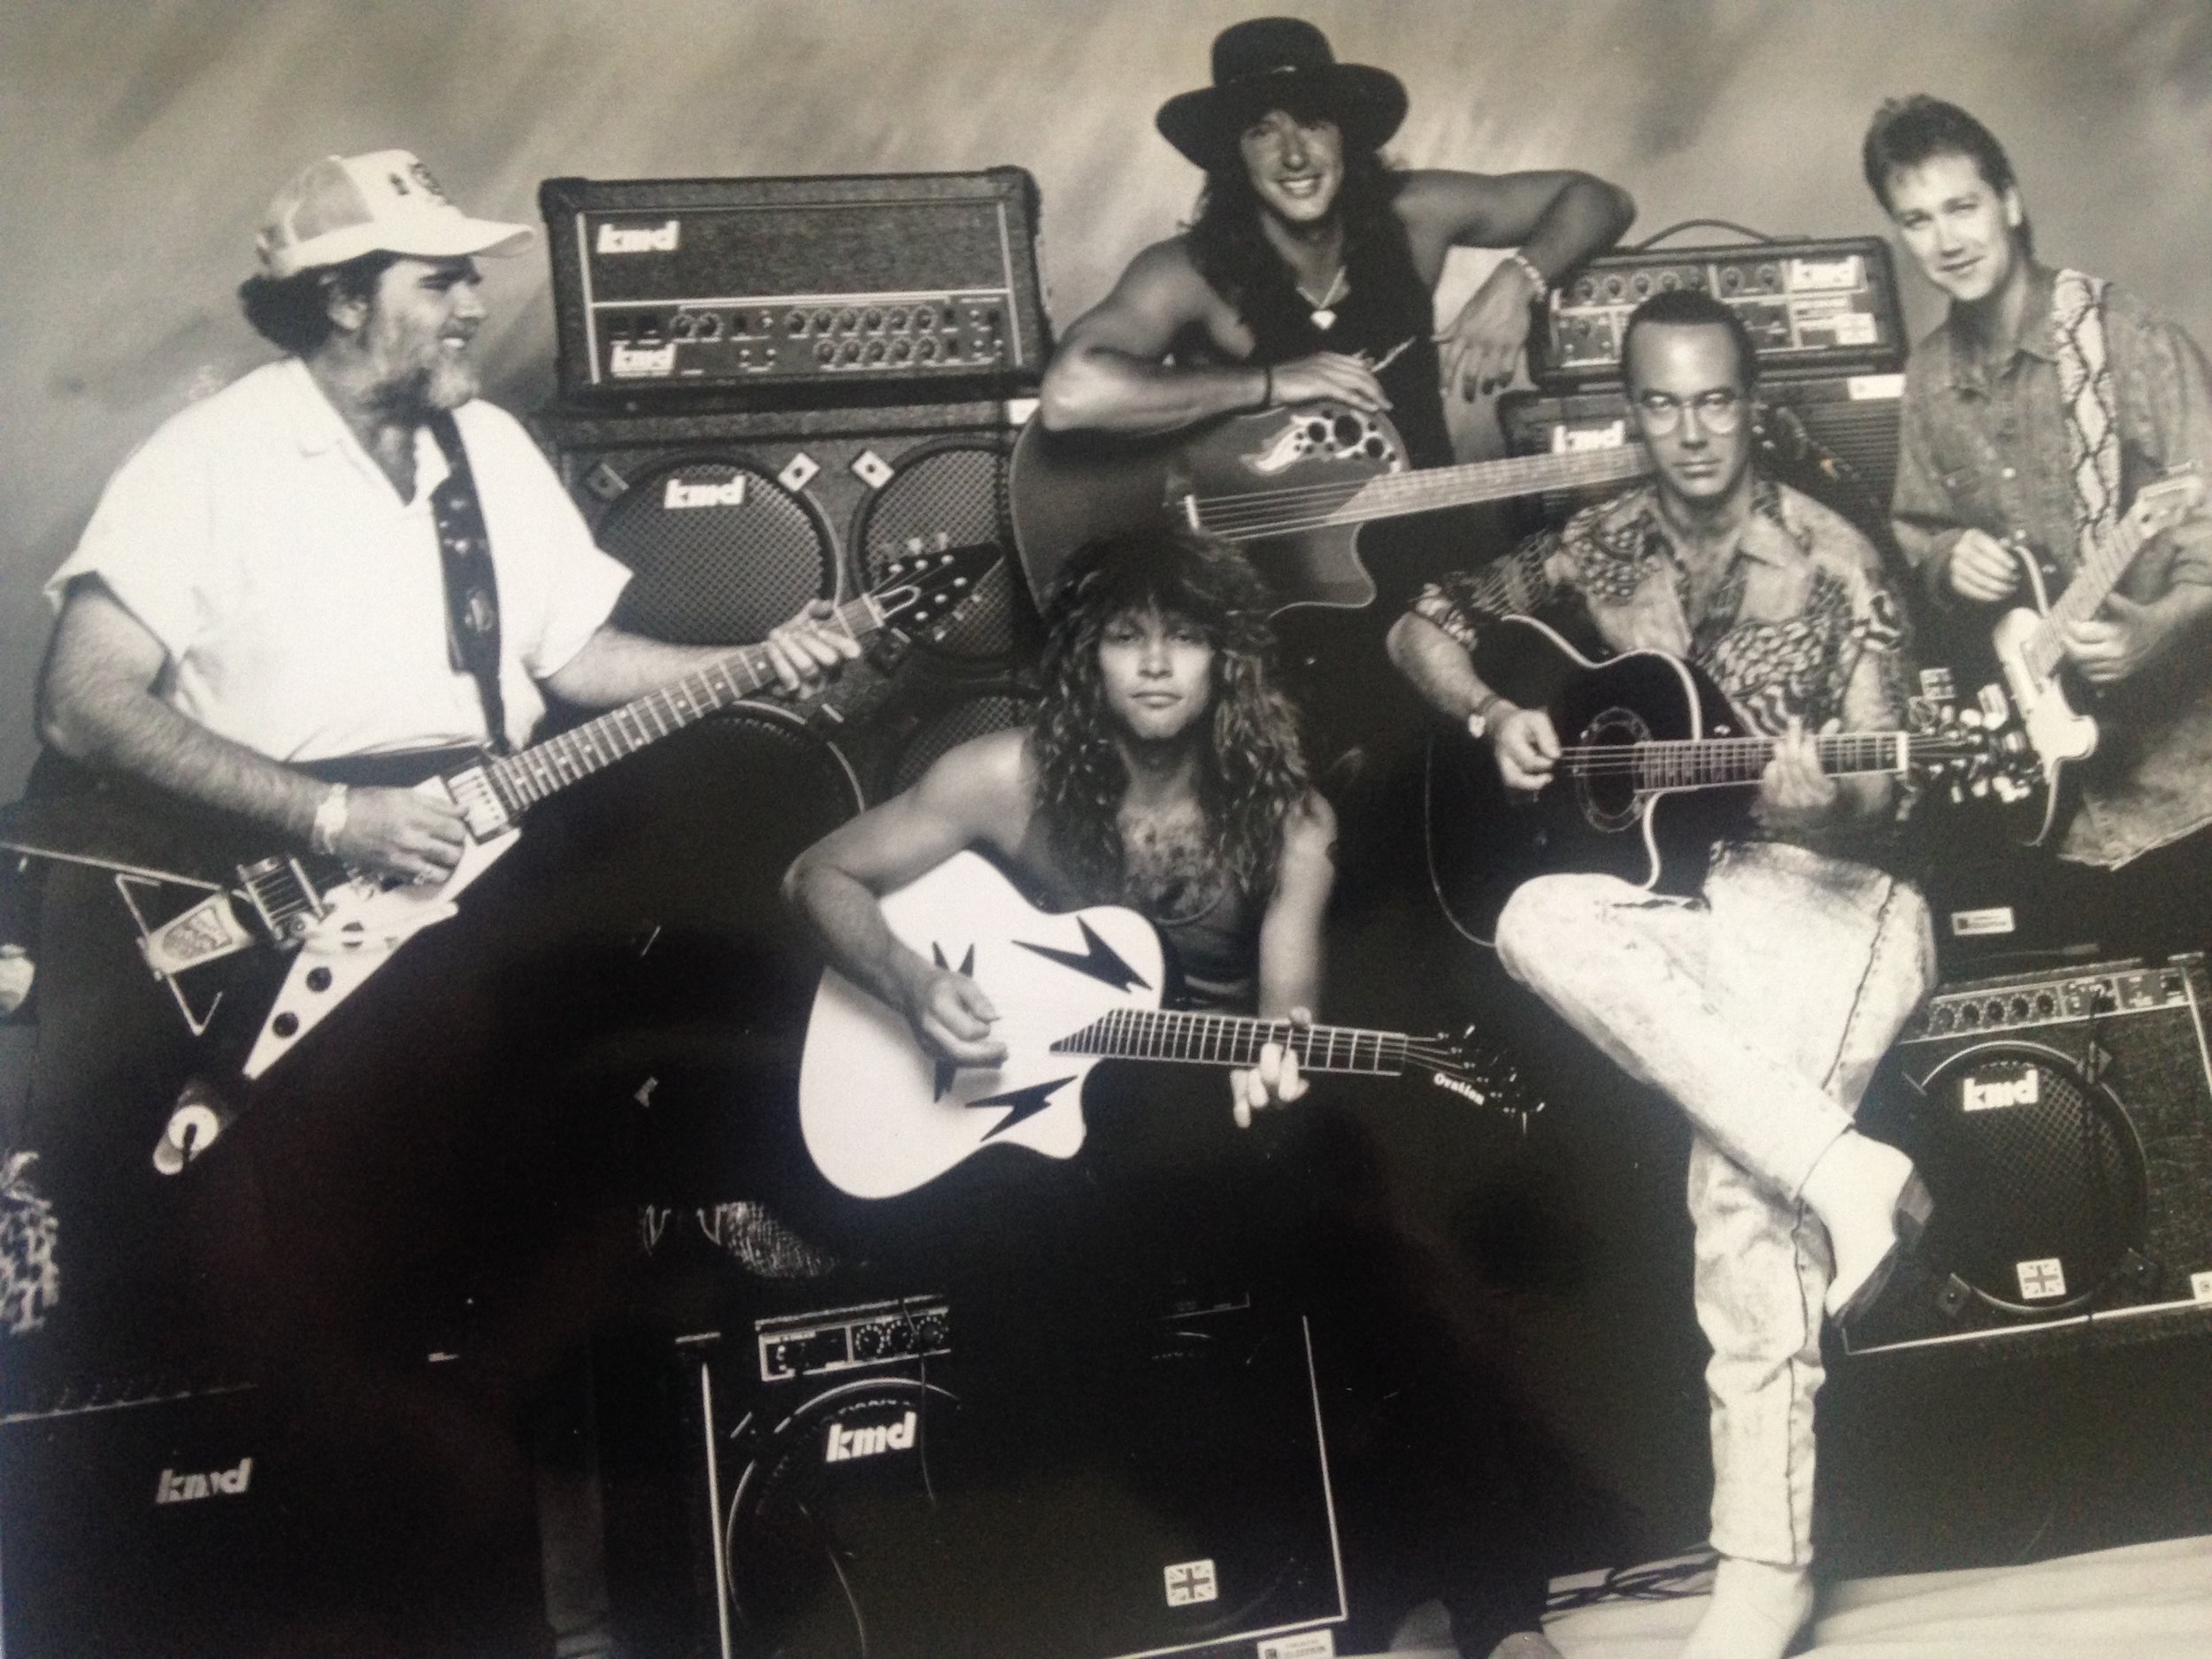 Lonnie Mack, Jon Bon Jovi, Richie Sambora, Al Di Meola, Steve Wariner